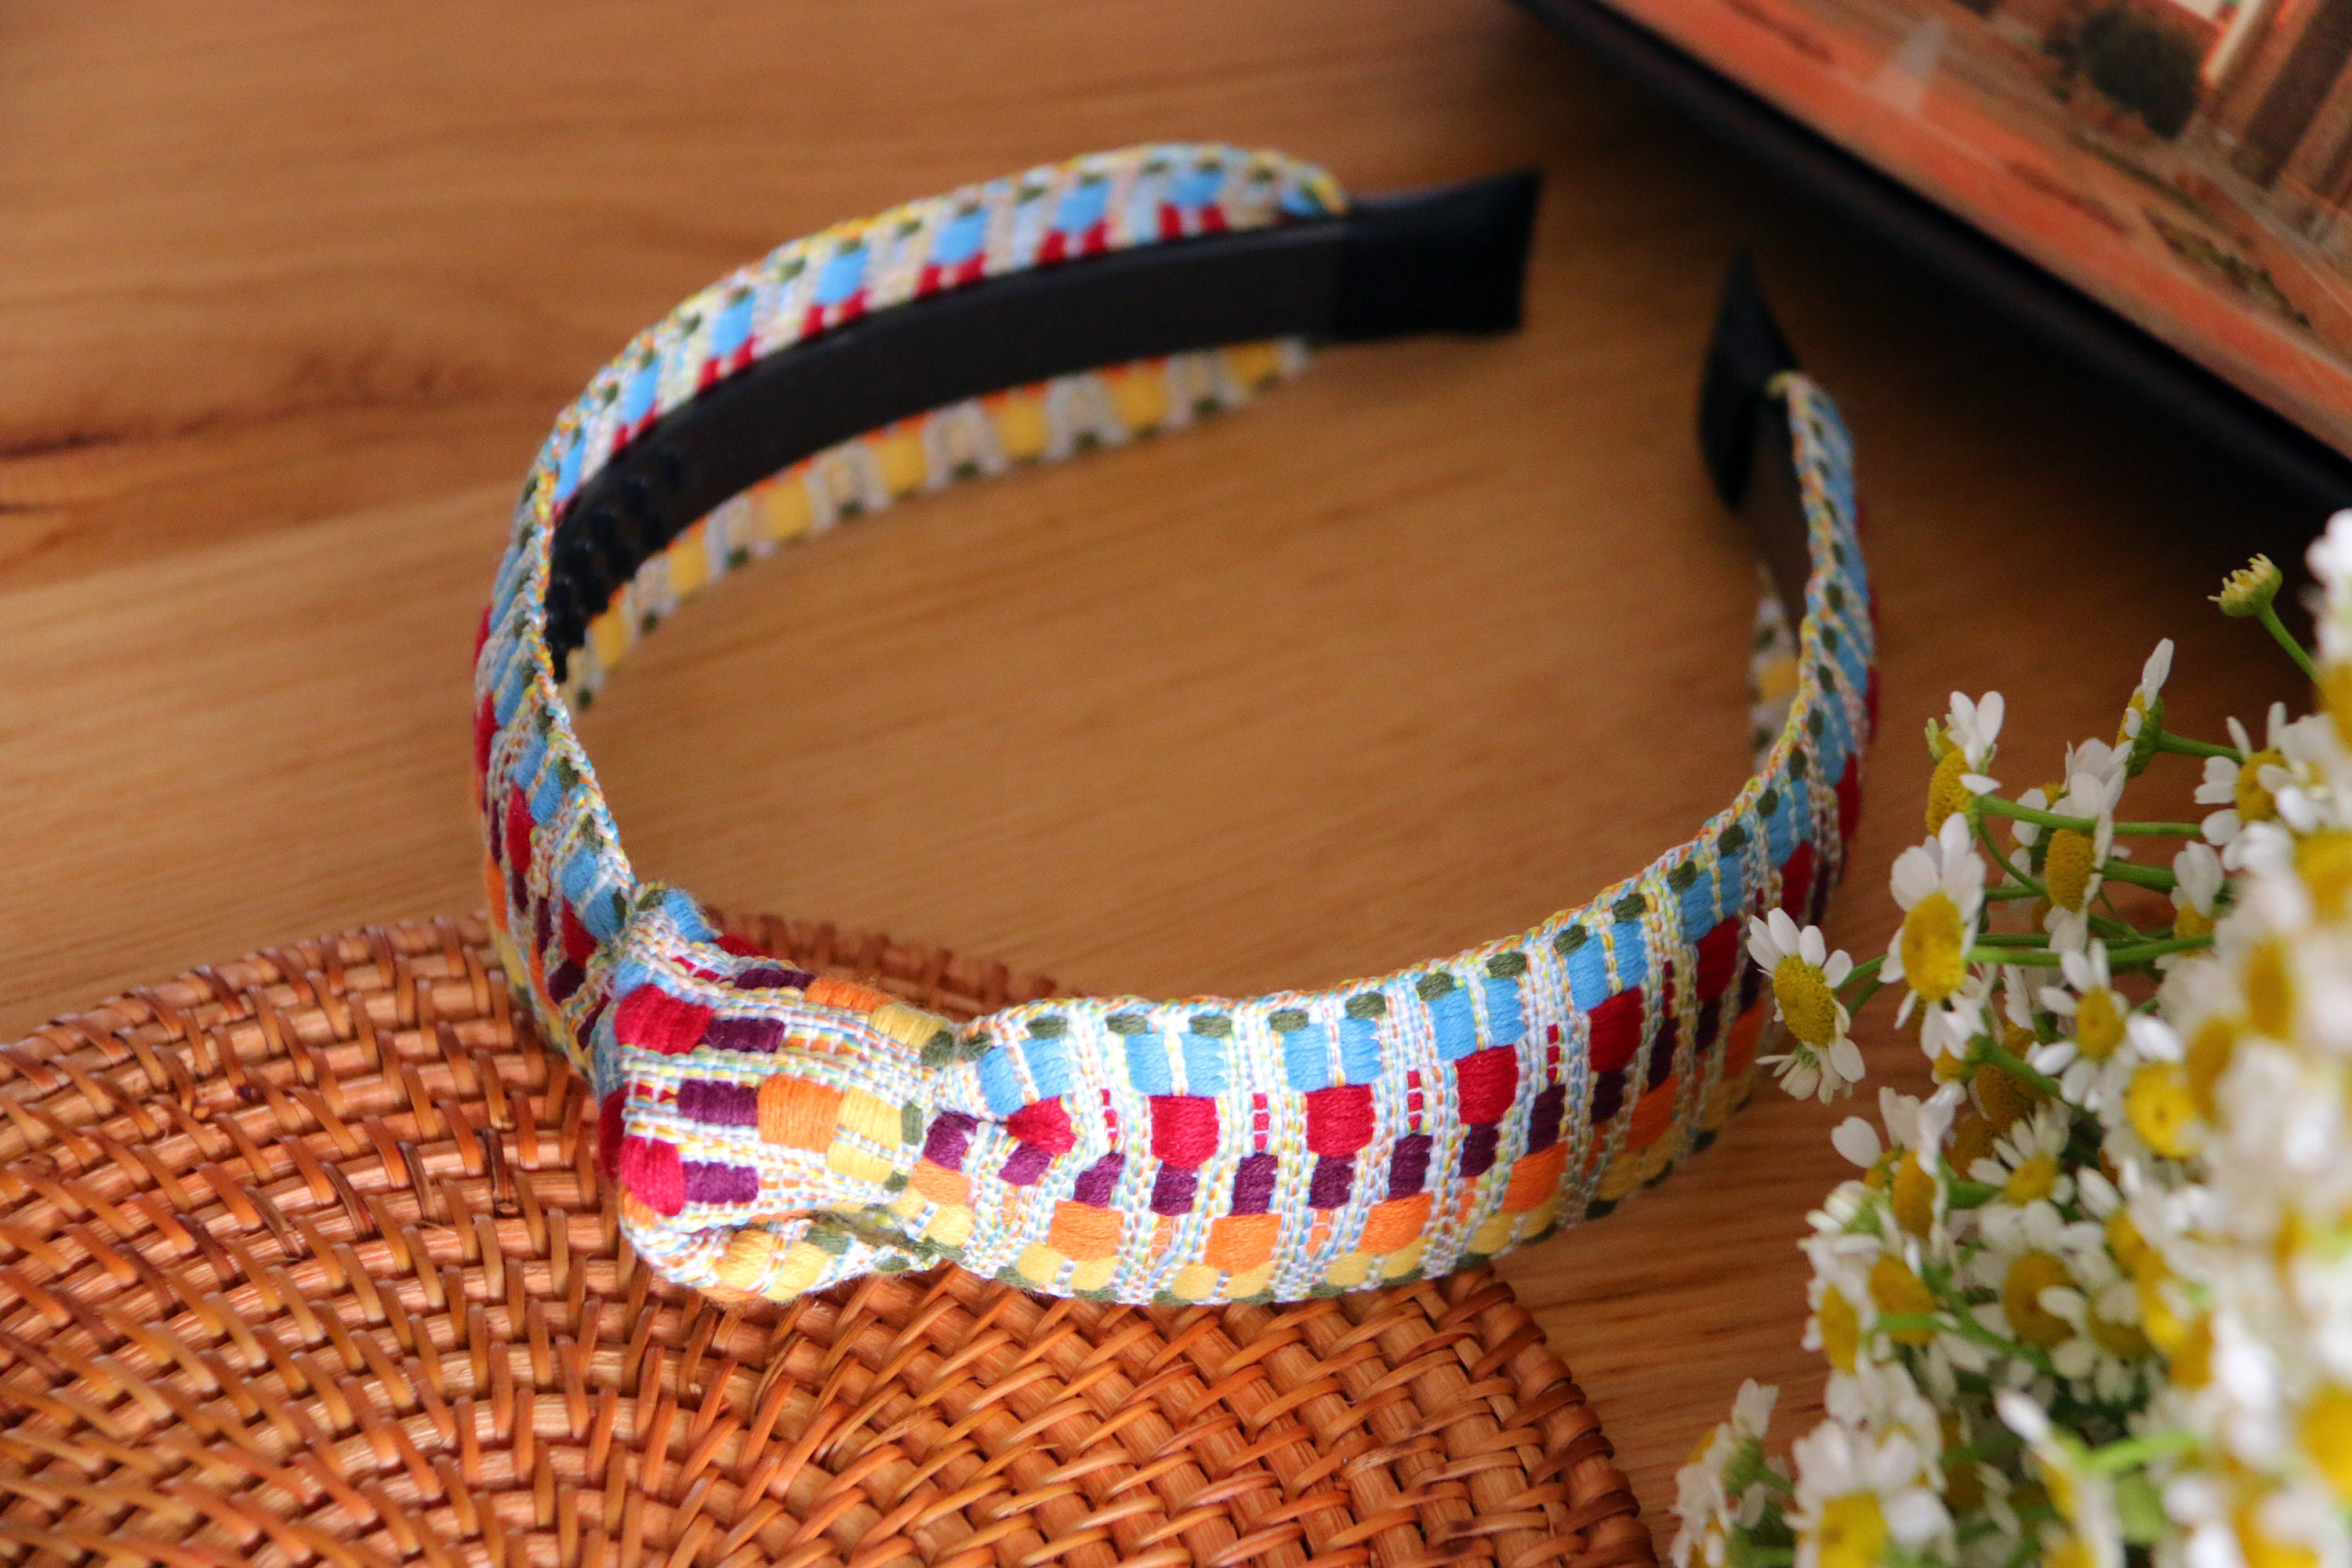 Narrow Headband With Small Knot,boho/gypsy Style Headband With Knot ...